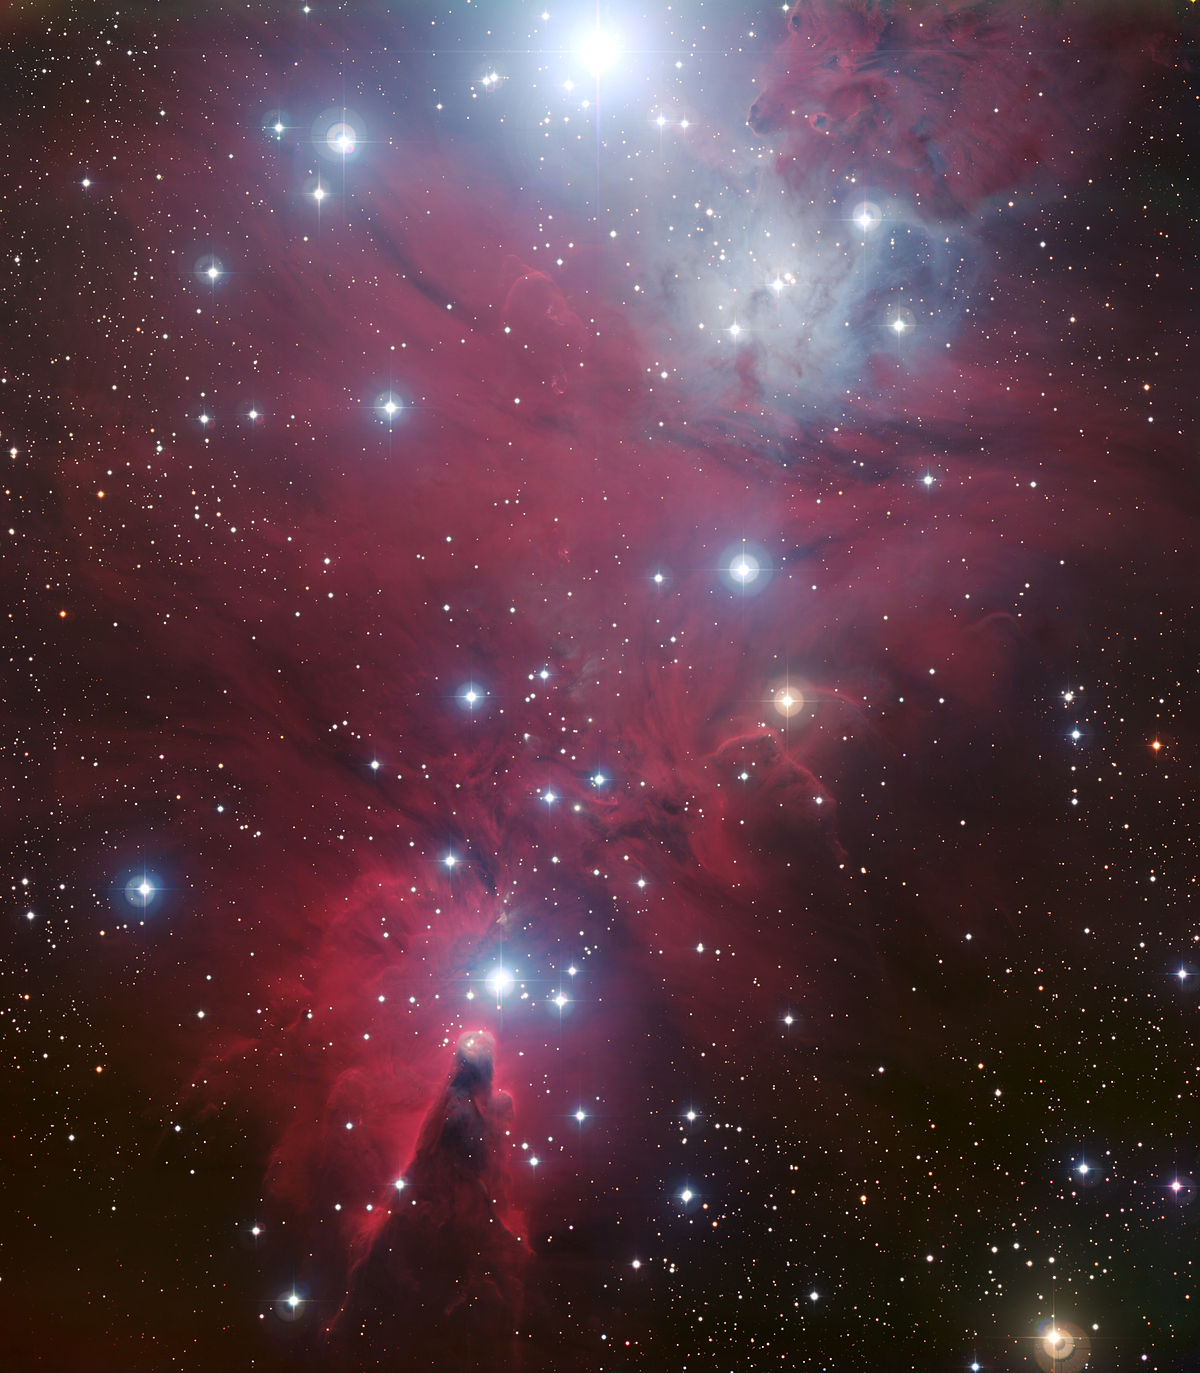 NGC2264v1.jpg